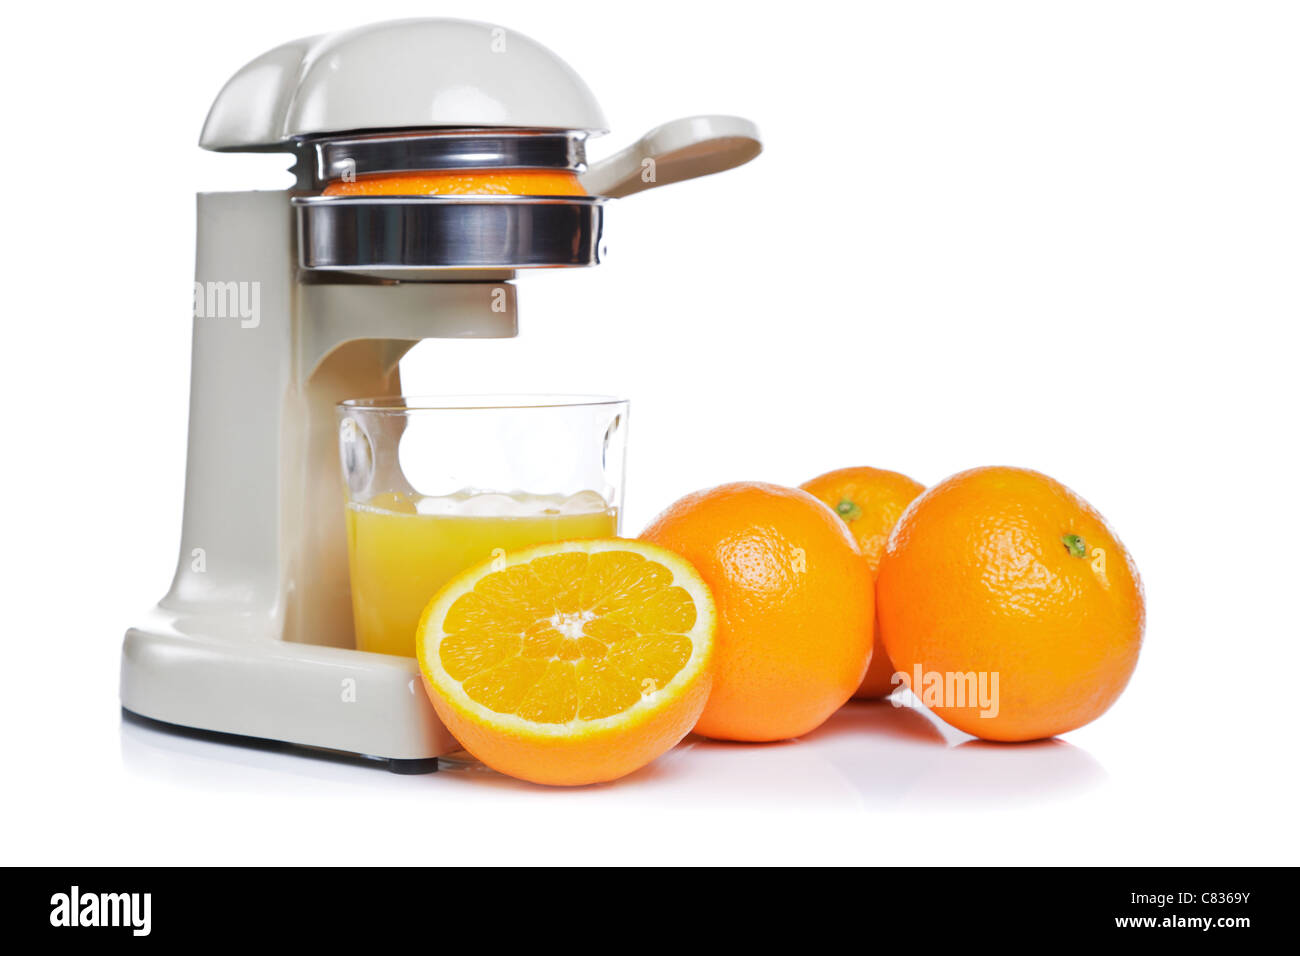 Foto von einem Entsafter und ein Glas frisch gepressten Orangensaft, isoliert auf einem weißen Hintergrund. Stockfoto